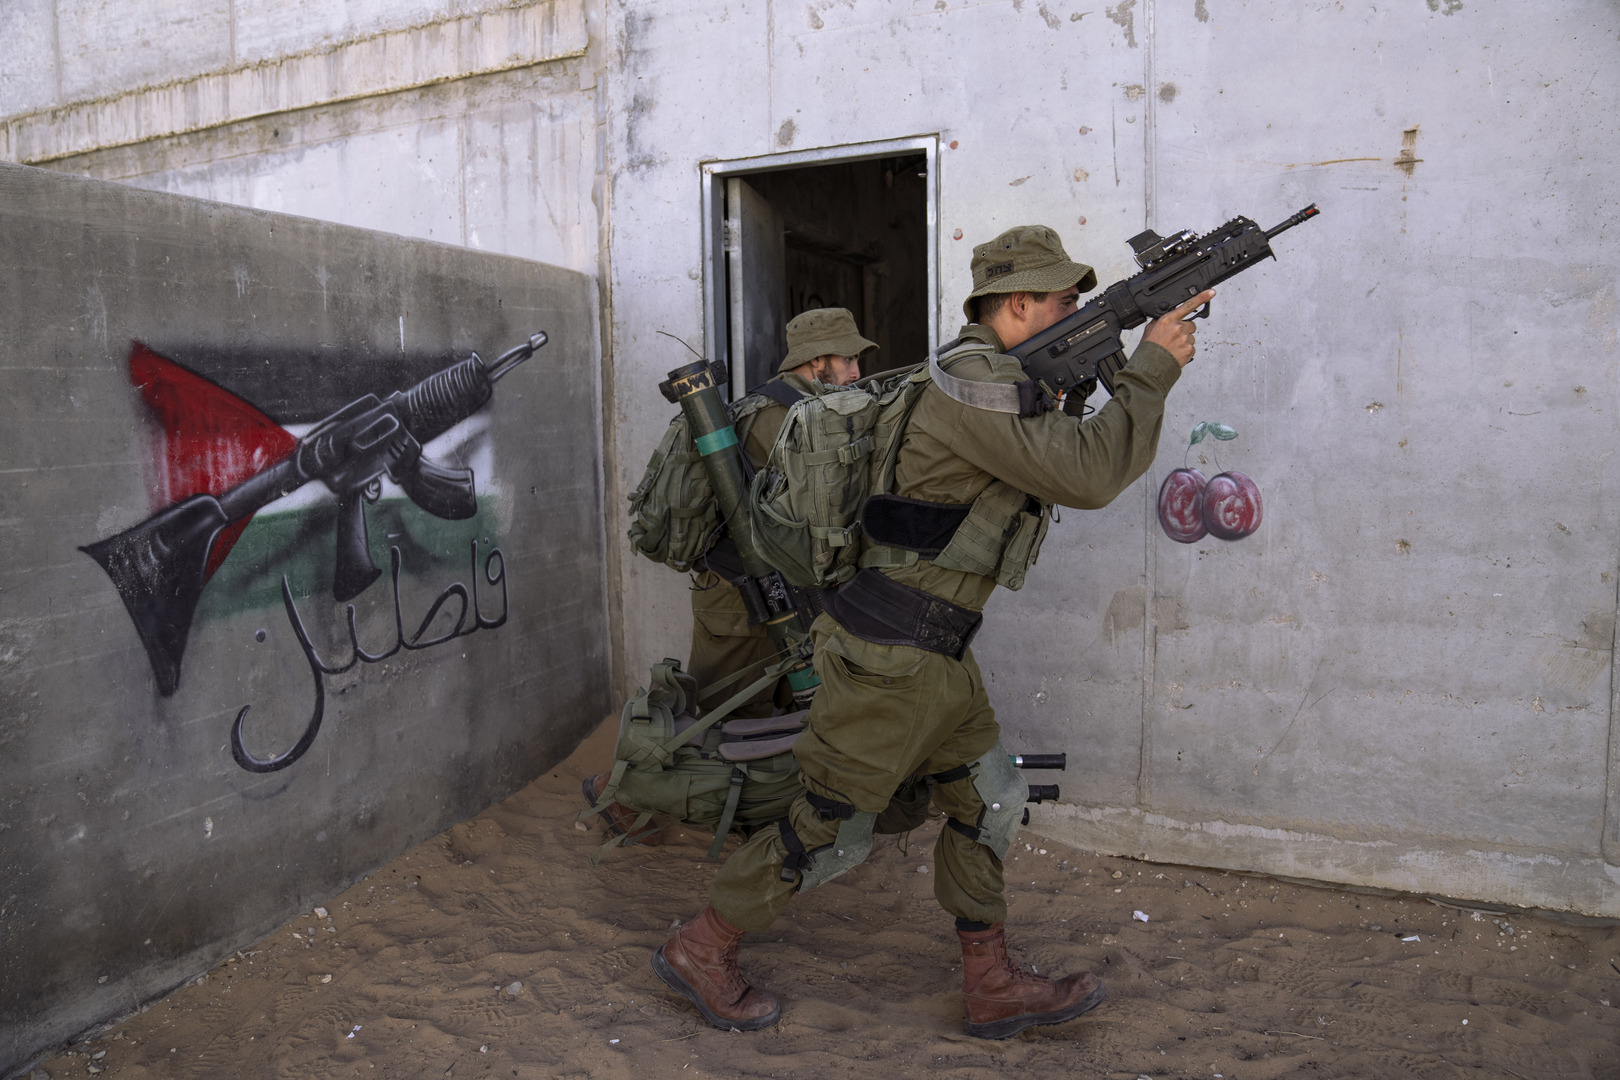 مقتل فلسطيني برصاص الجيش الإسرائيلي في نابلس